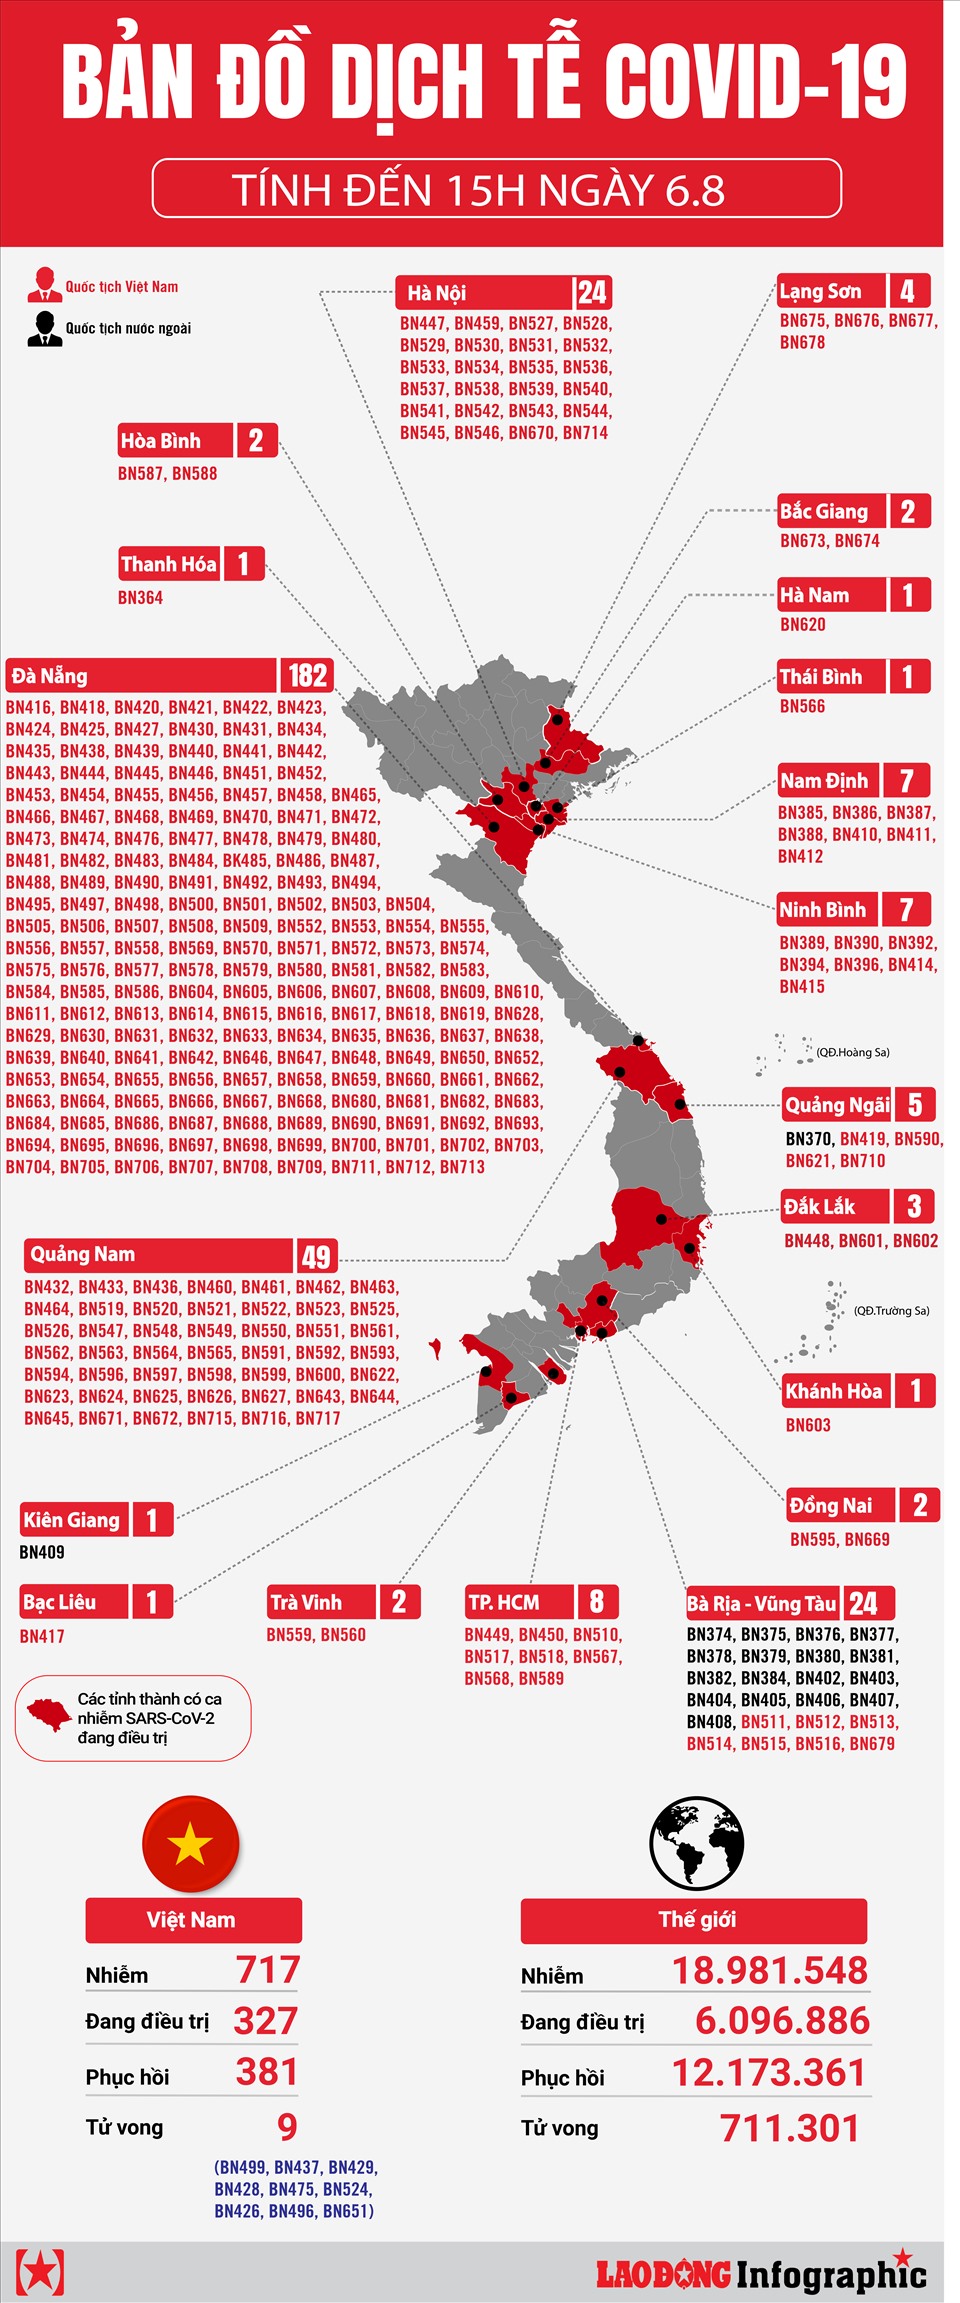 Bản đồ dịch tễ COVID-19 Việt Nam mới nhất tại Ninh Bình cho thấy sự đáp ứng nhanh chóng và hiệu quả của chính quyền địa phương trong việc phòng chống dịch bệnh. Người dân có thể yên tâm hơn về sự an toàn và sức khỏe của mình cũng như của cộng đồng.